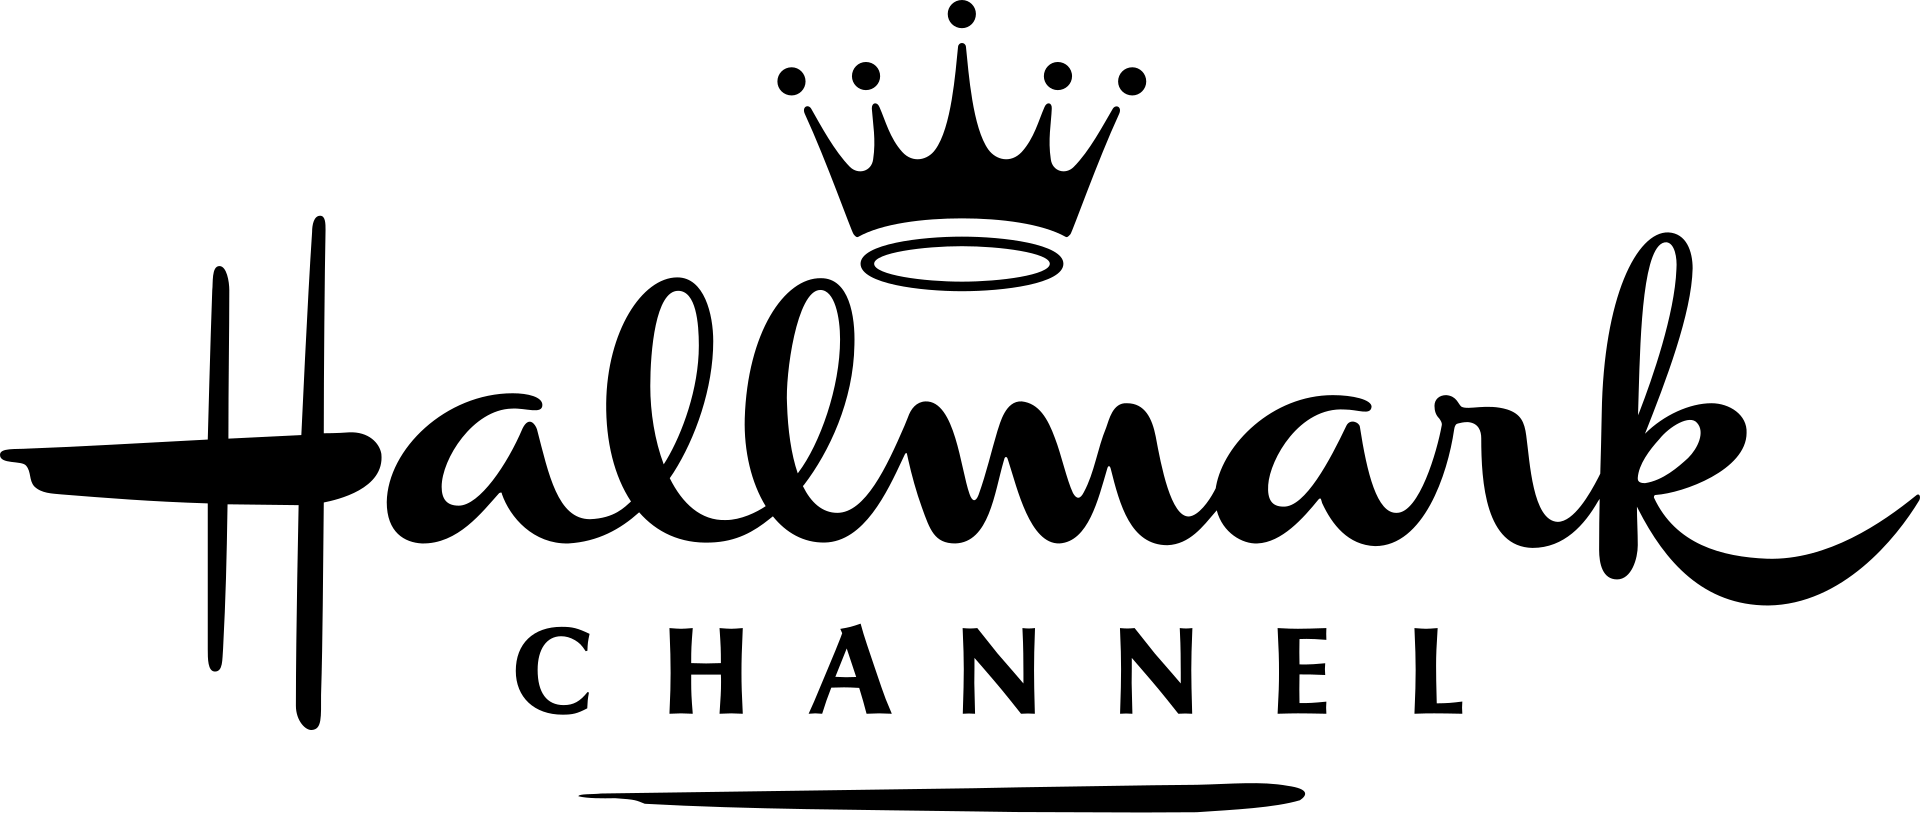 Hallmark Movie Channel